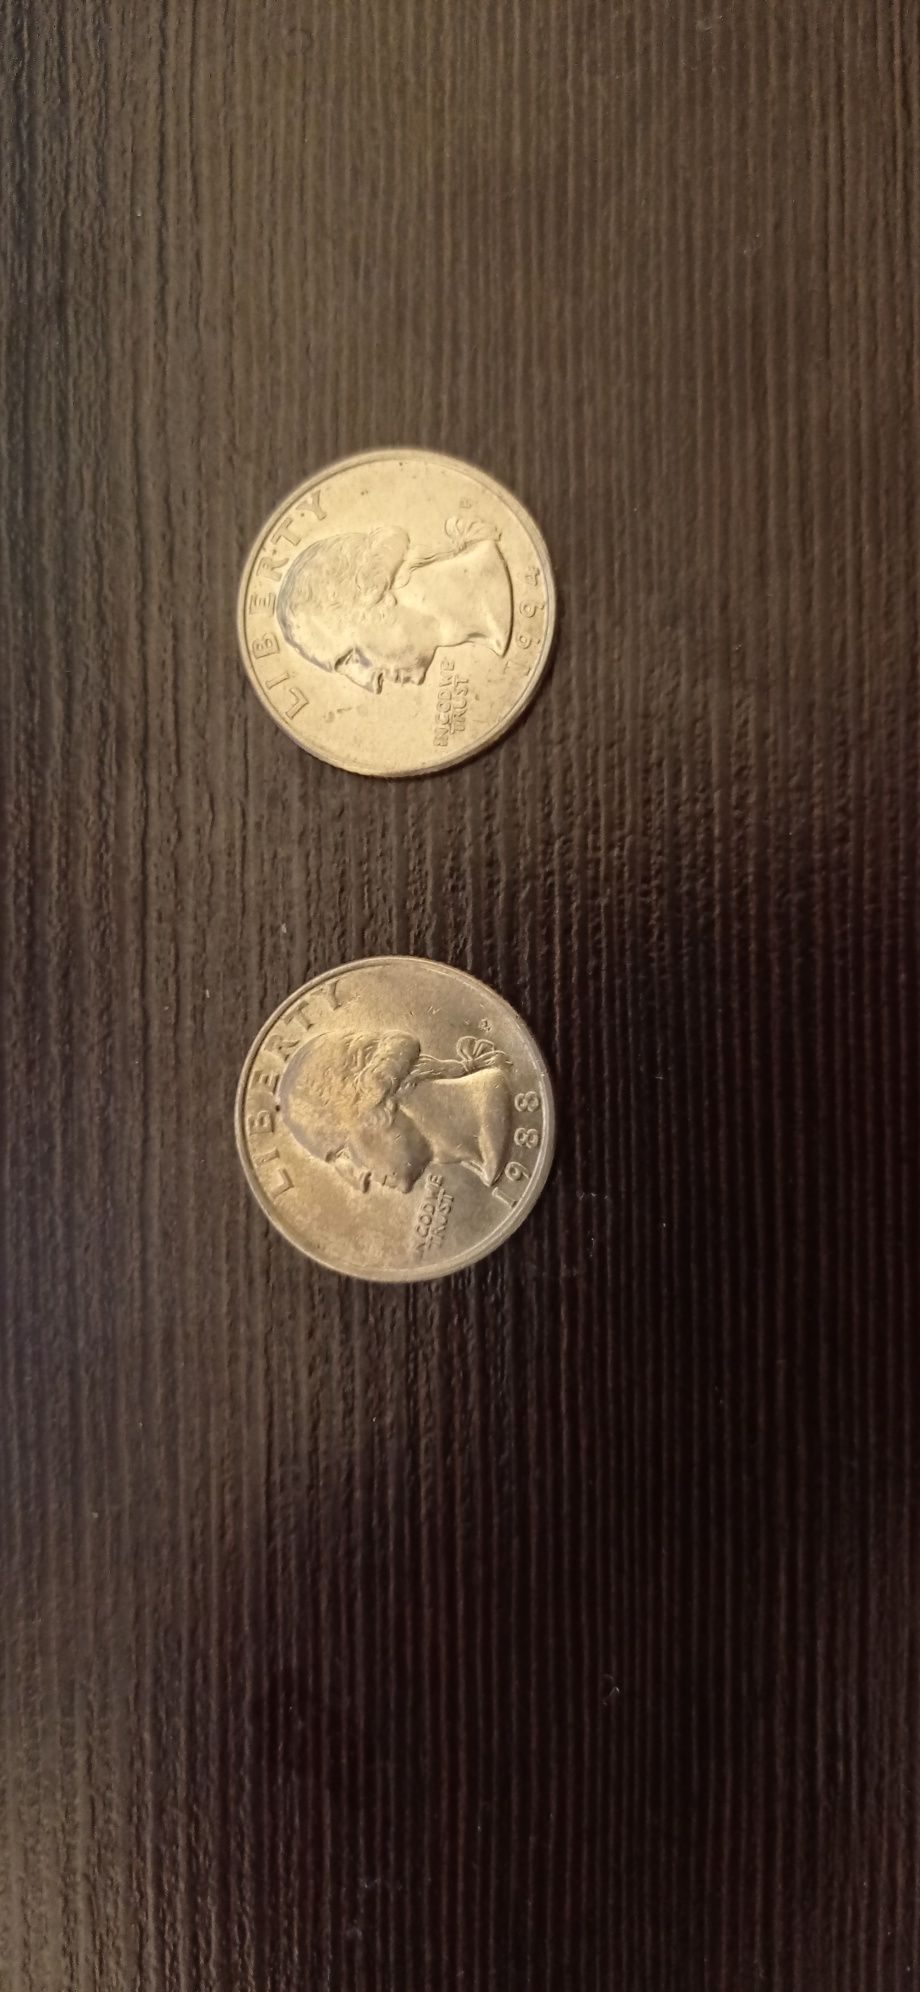 Монета liberty quarter dollar перевертень